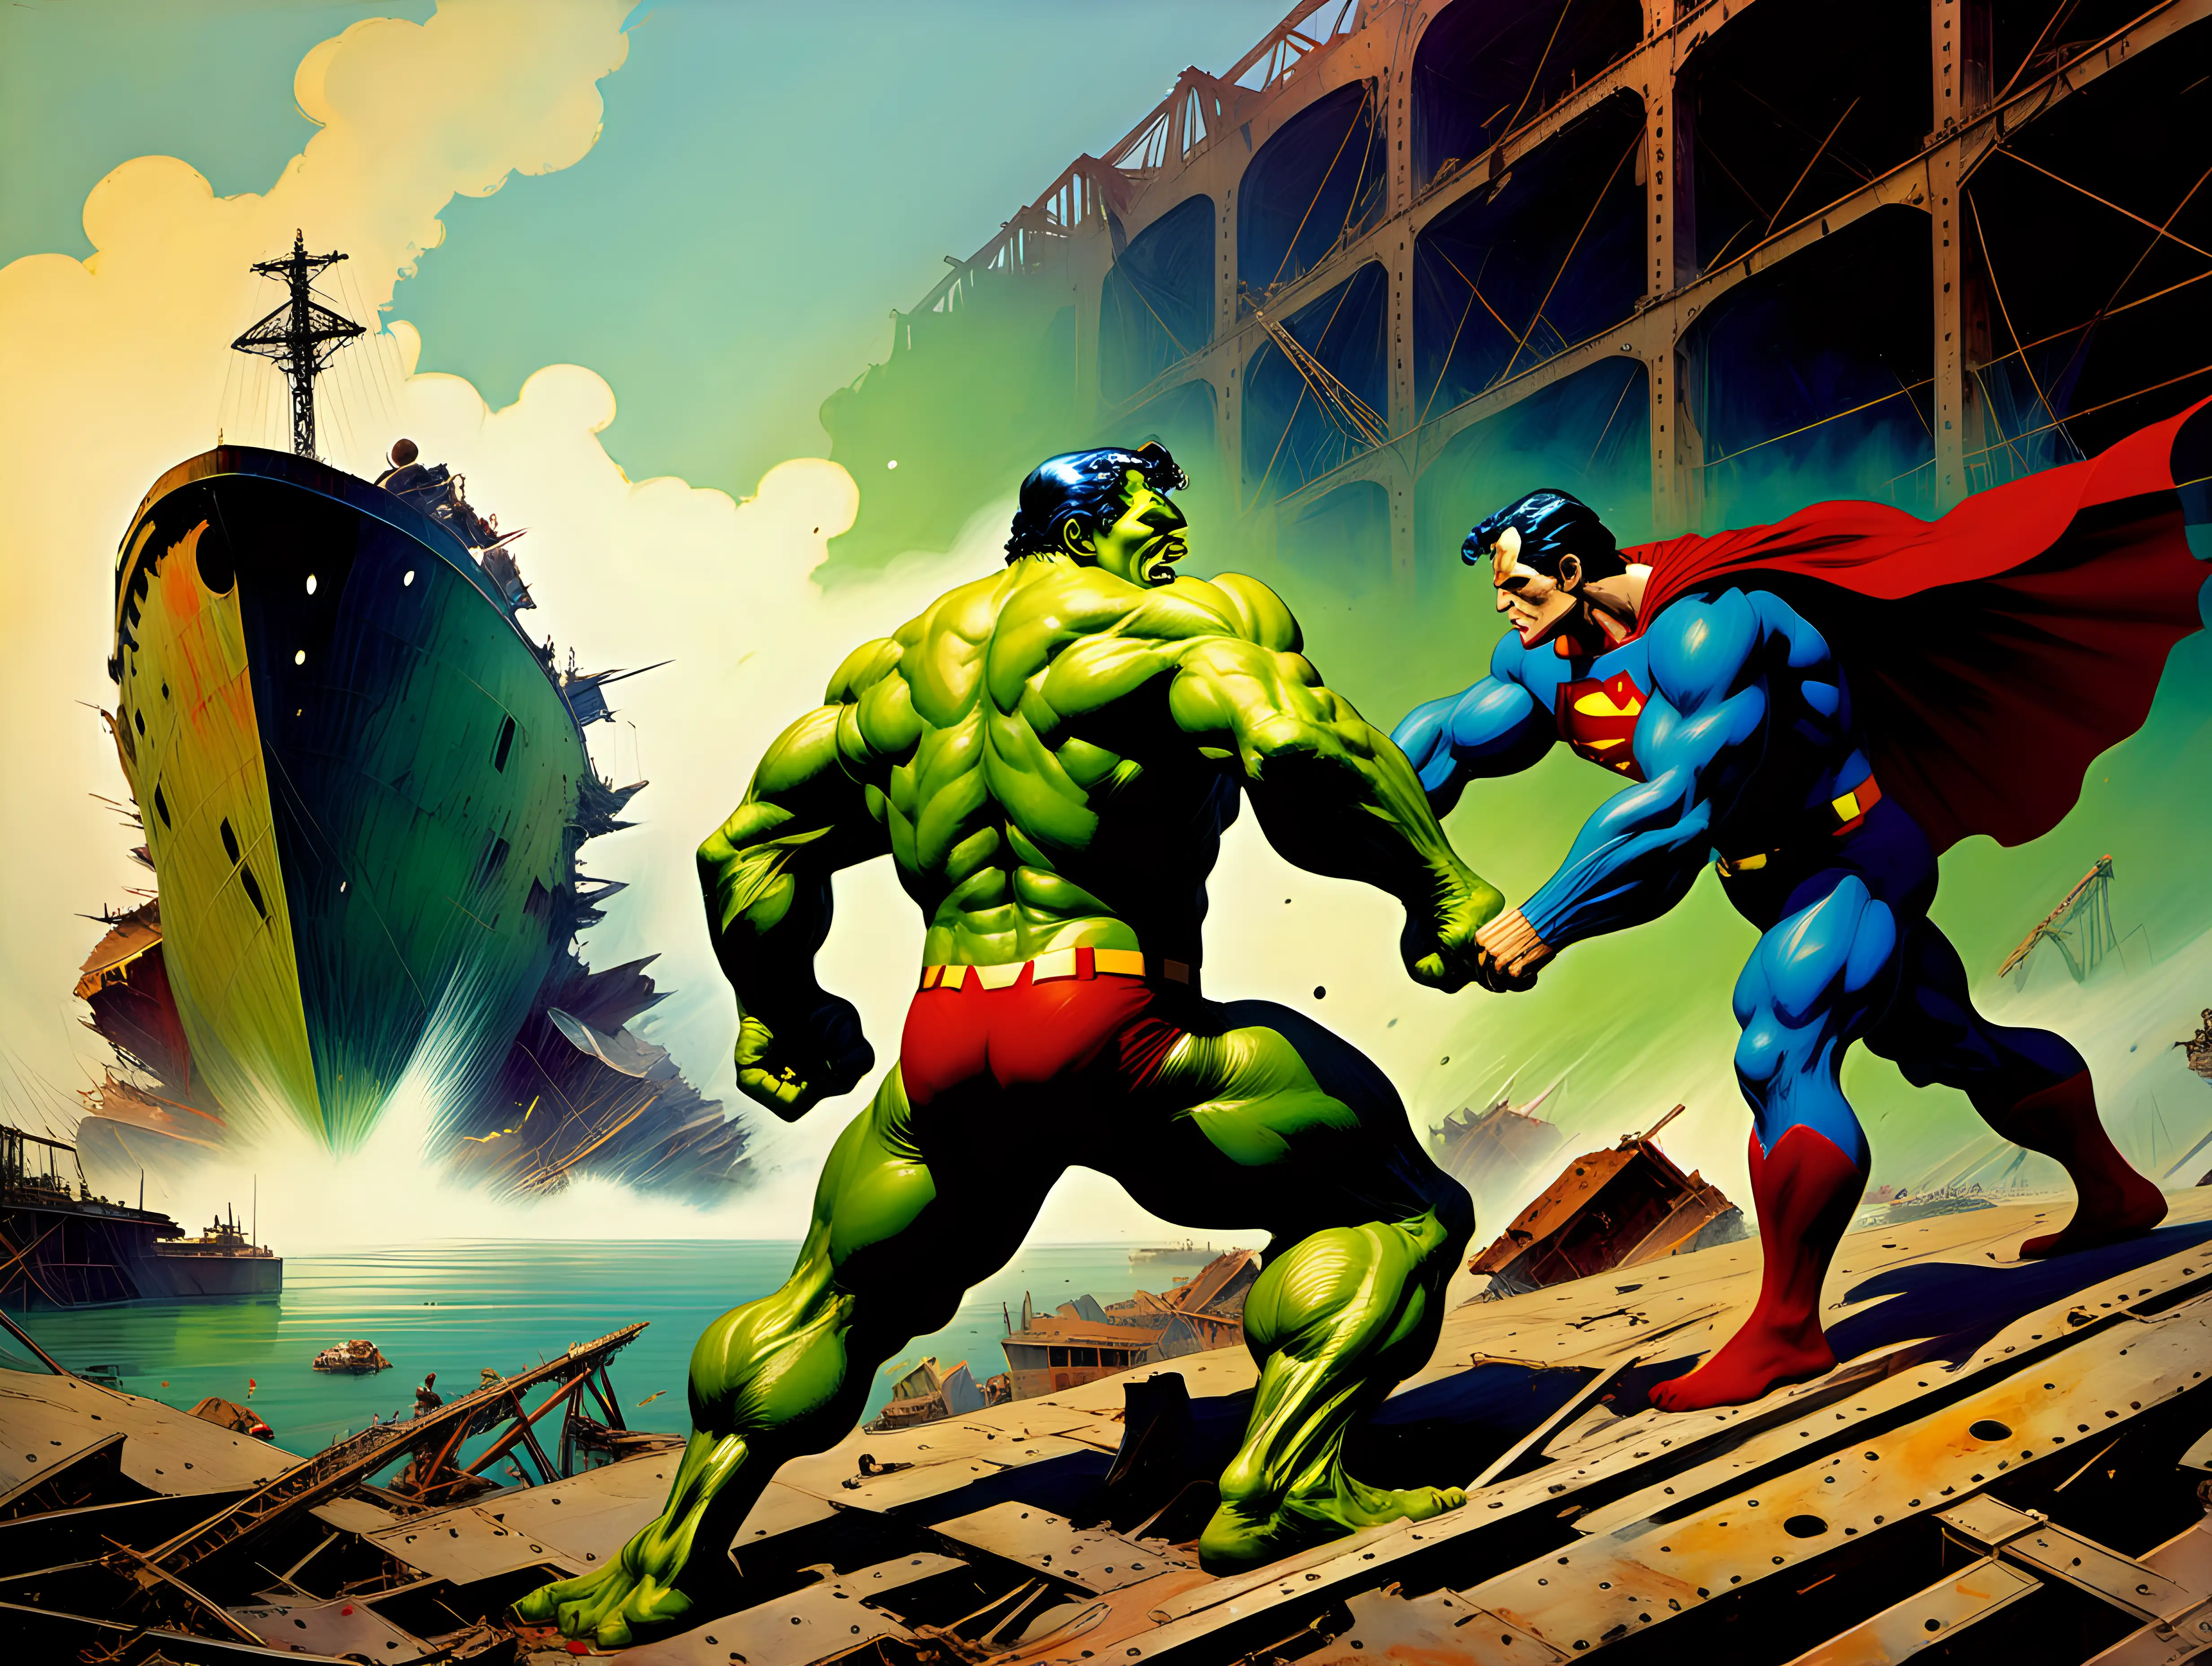 Frank Frazetta style Superman fights the hulk in an abandon shipyard